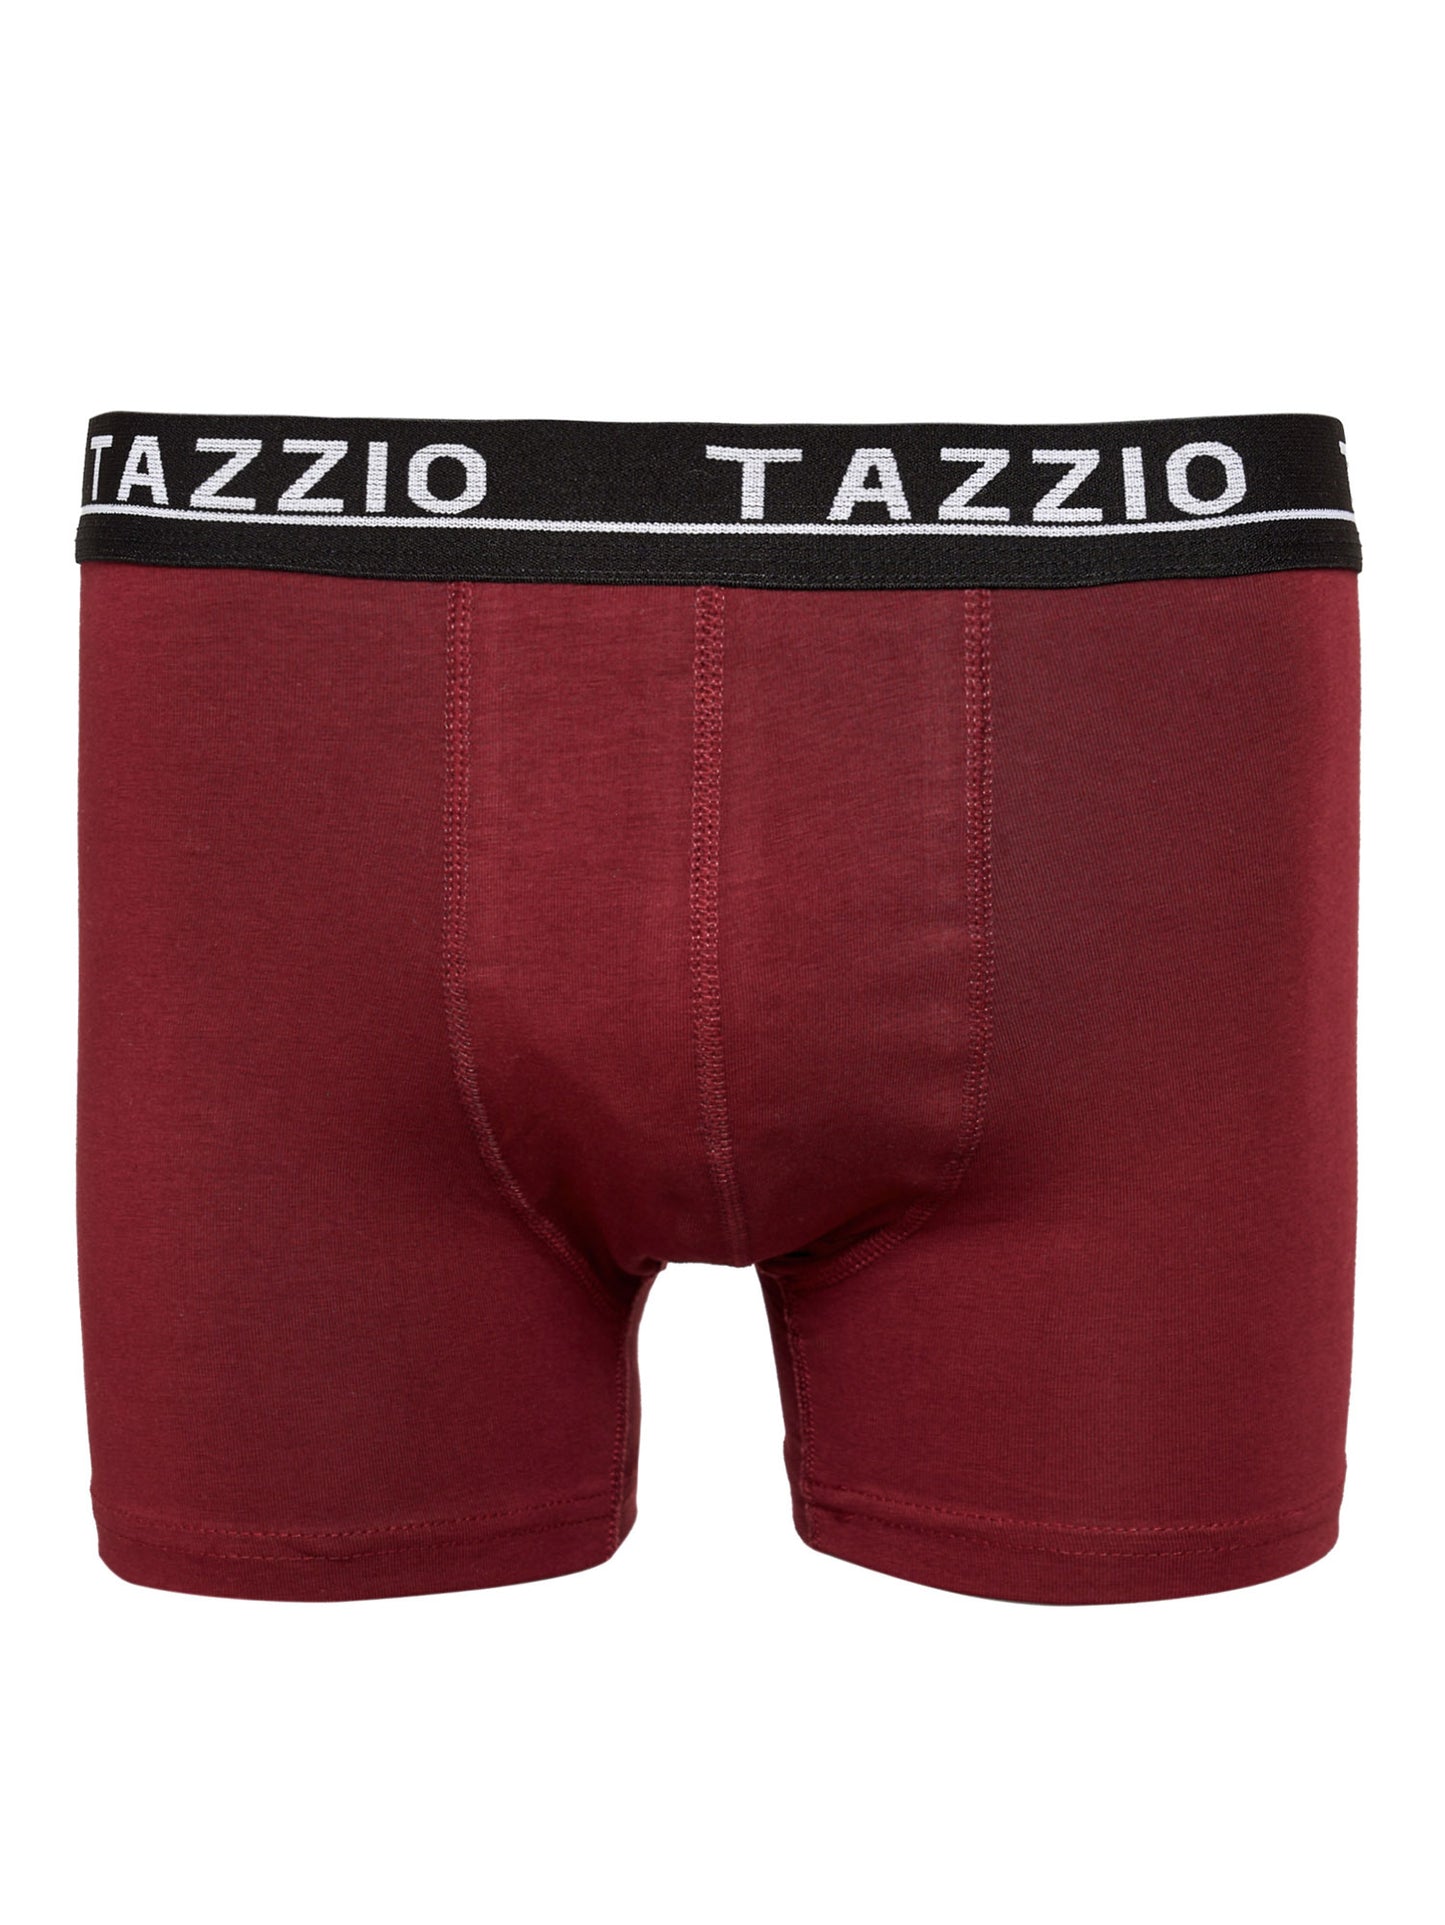 TAZZIO Boxershorts Men Herren 8er Pack Unterwäsche Unterhosen Männer Retroshorts